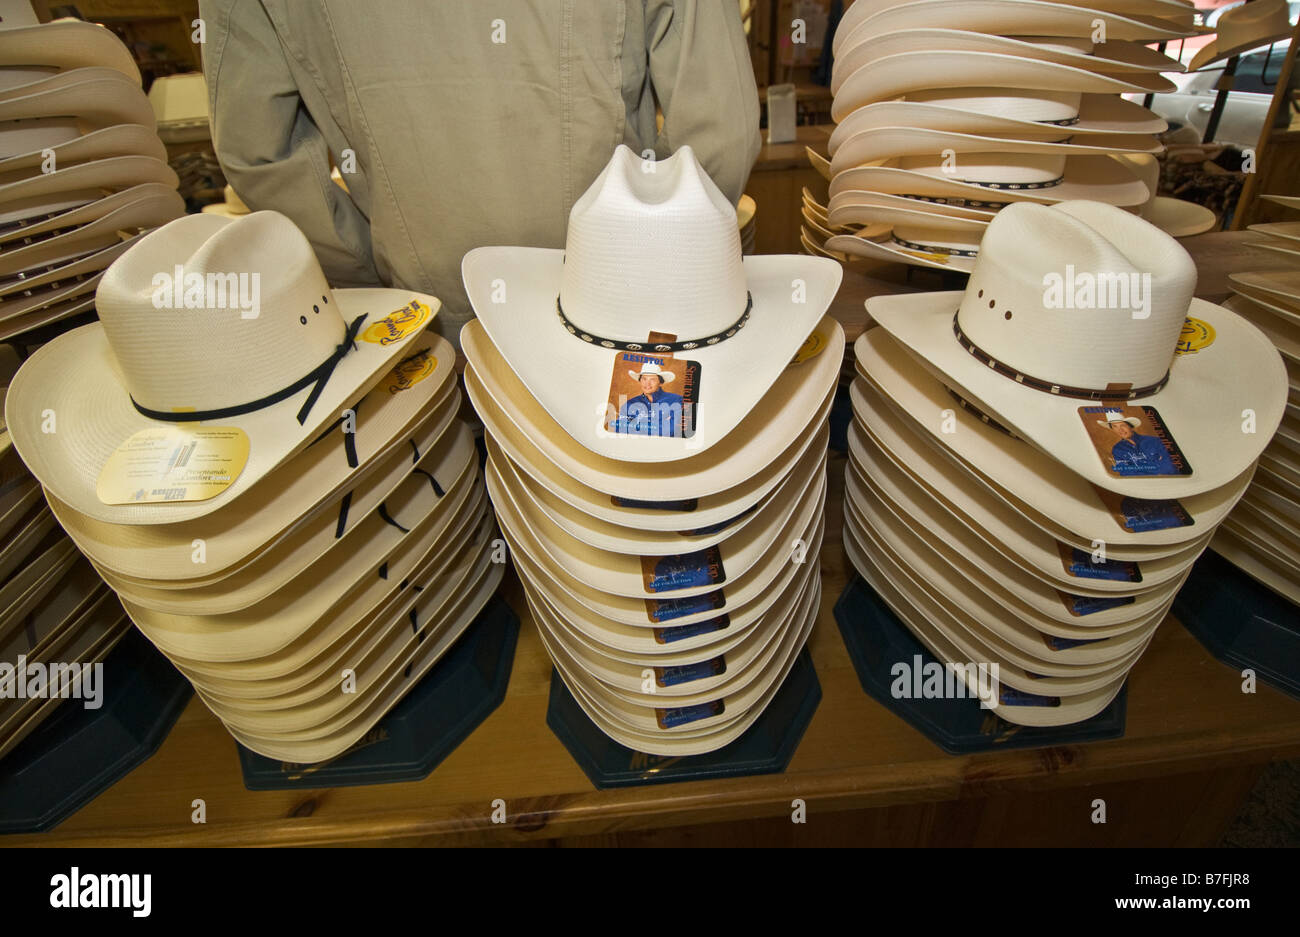 Texas Fort Worth Stockyards National Historic District M L Leddy western wear store chapeaux de cow-boy Banque D'Images